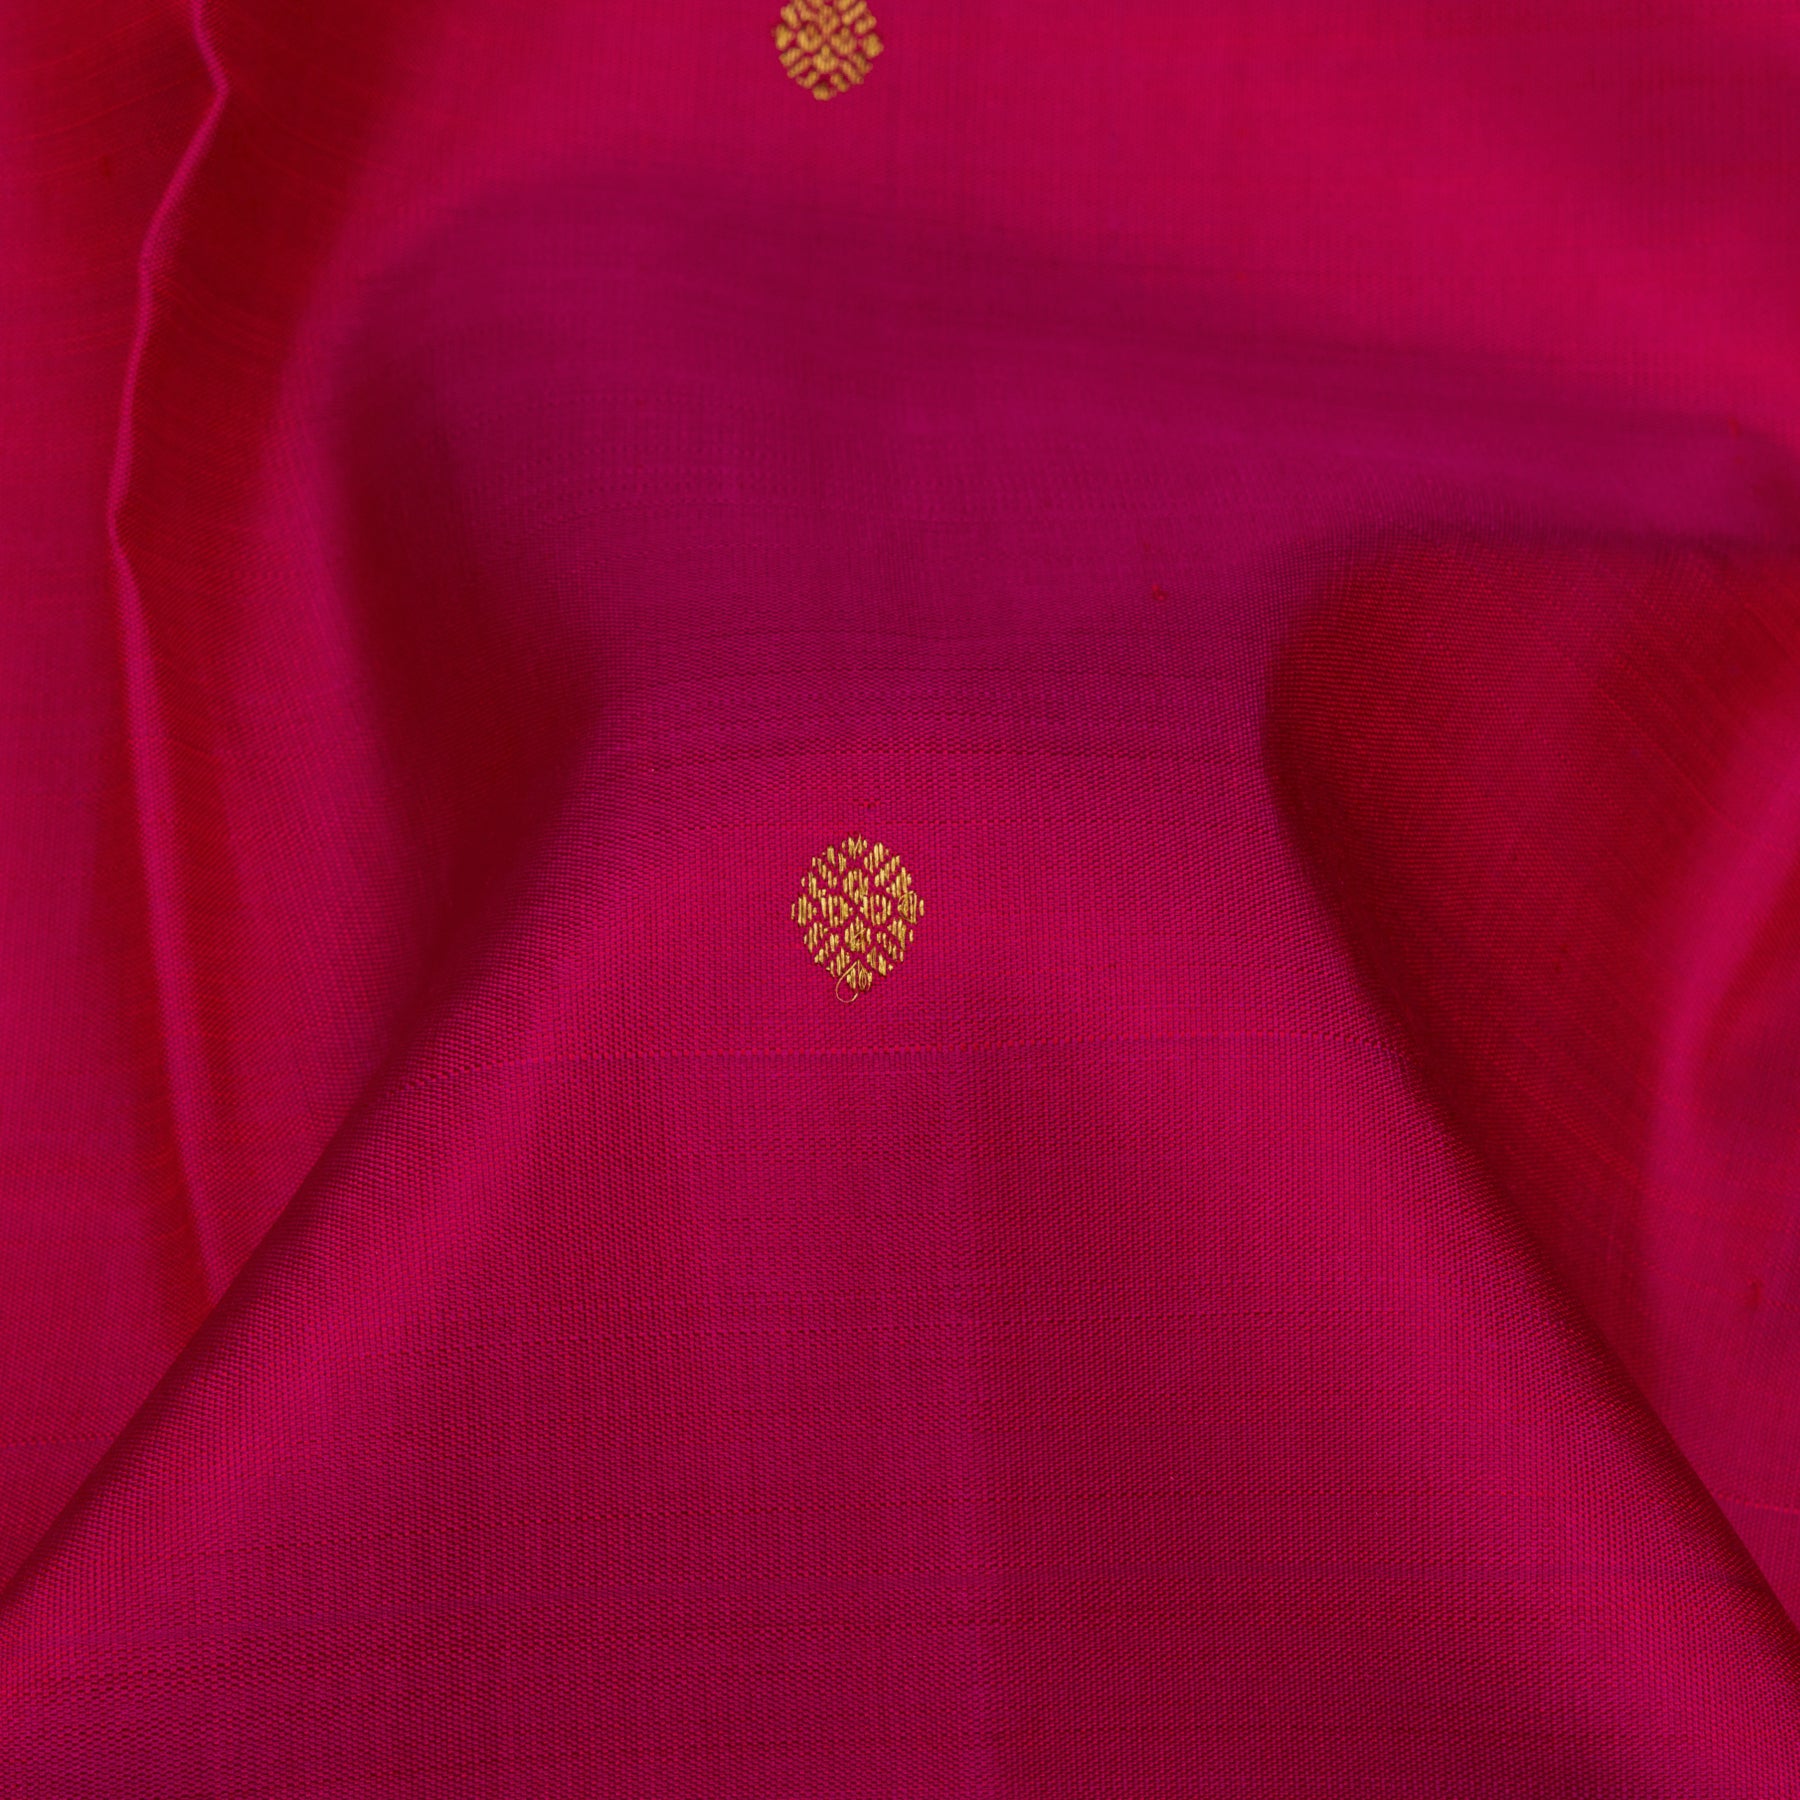 Kanakavalli Kanjivaram Silk Sari 23-599-HS001-13947 - Fabric View